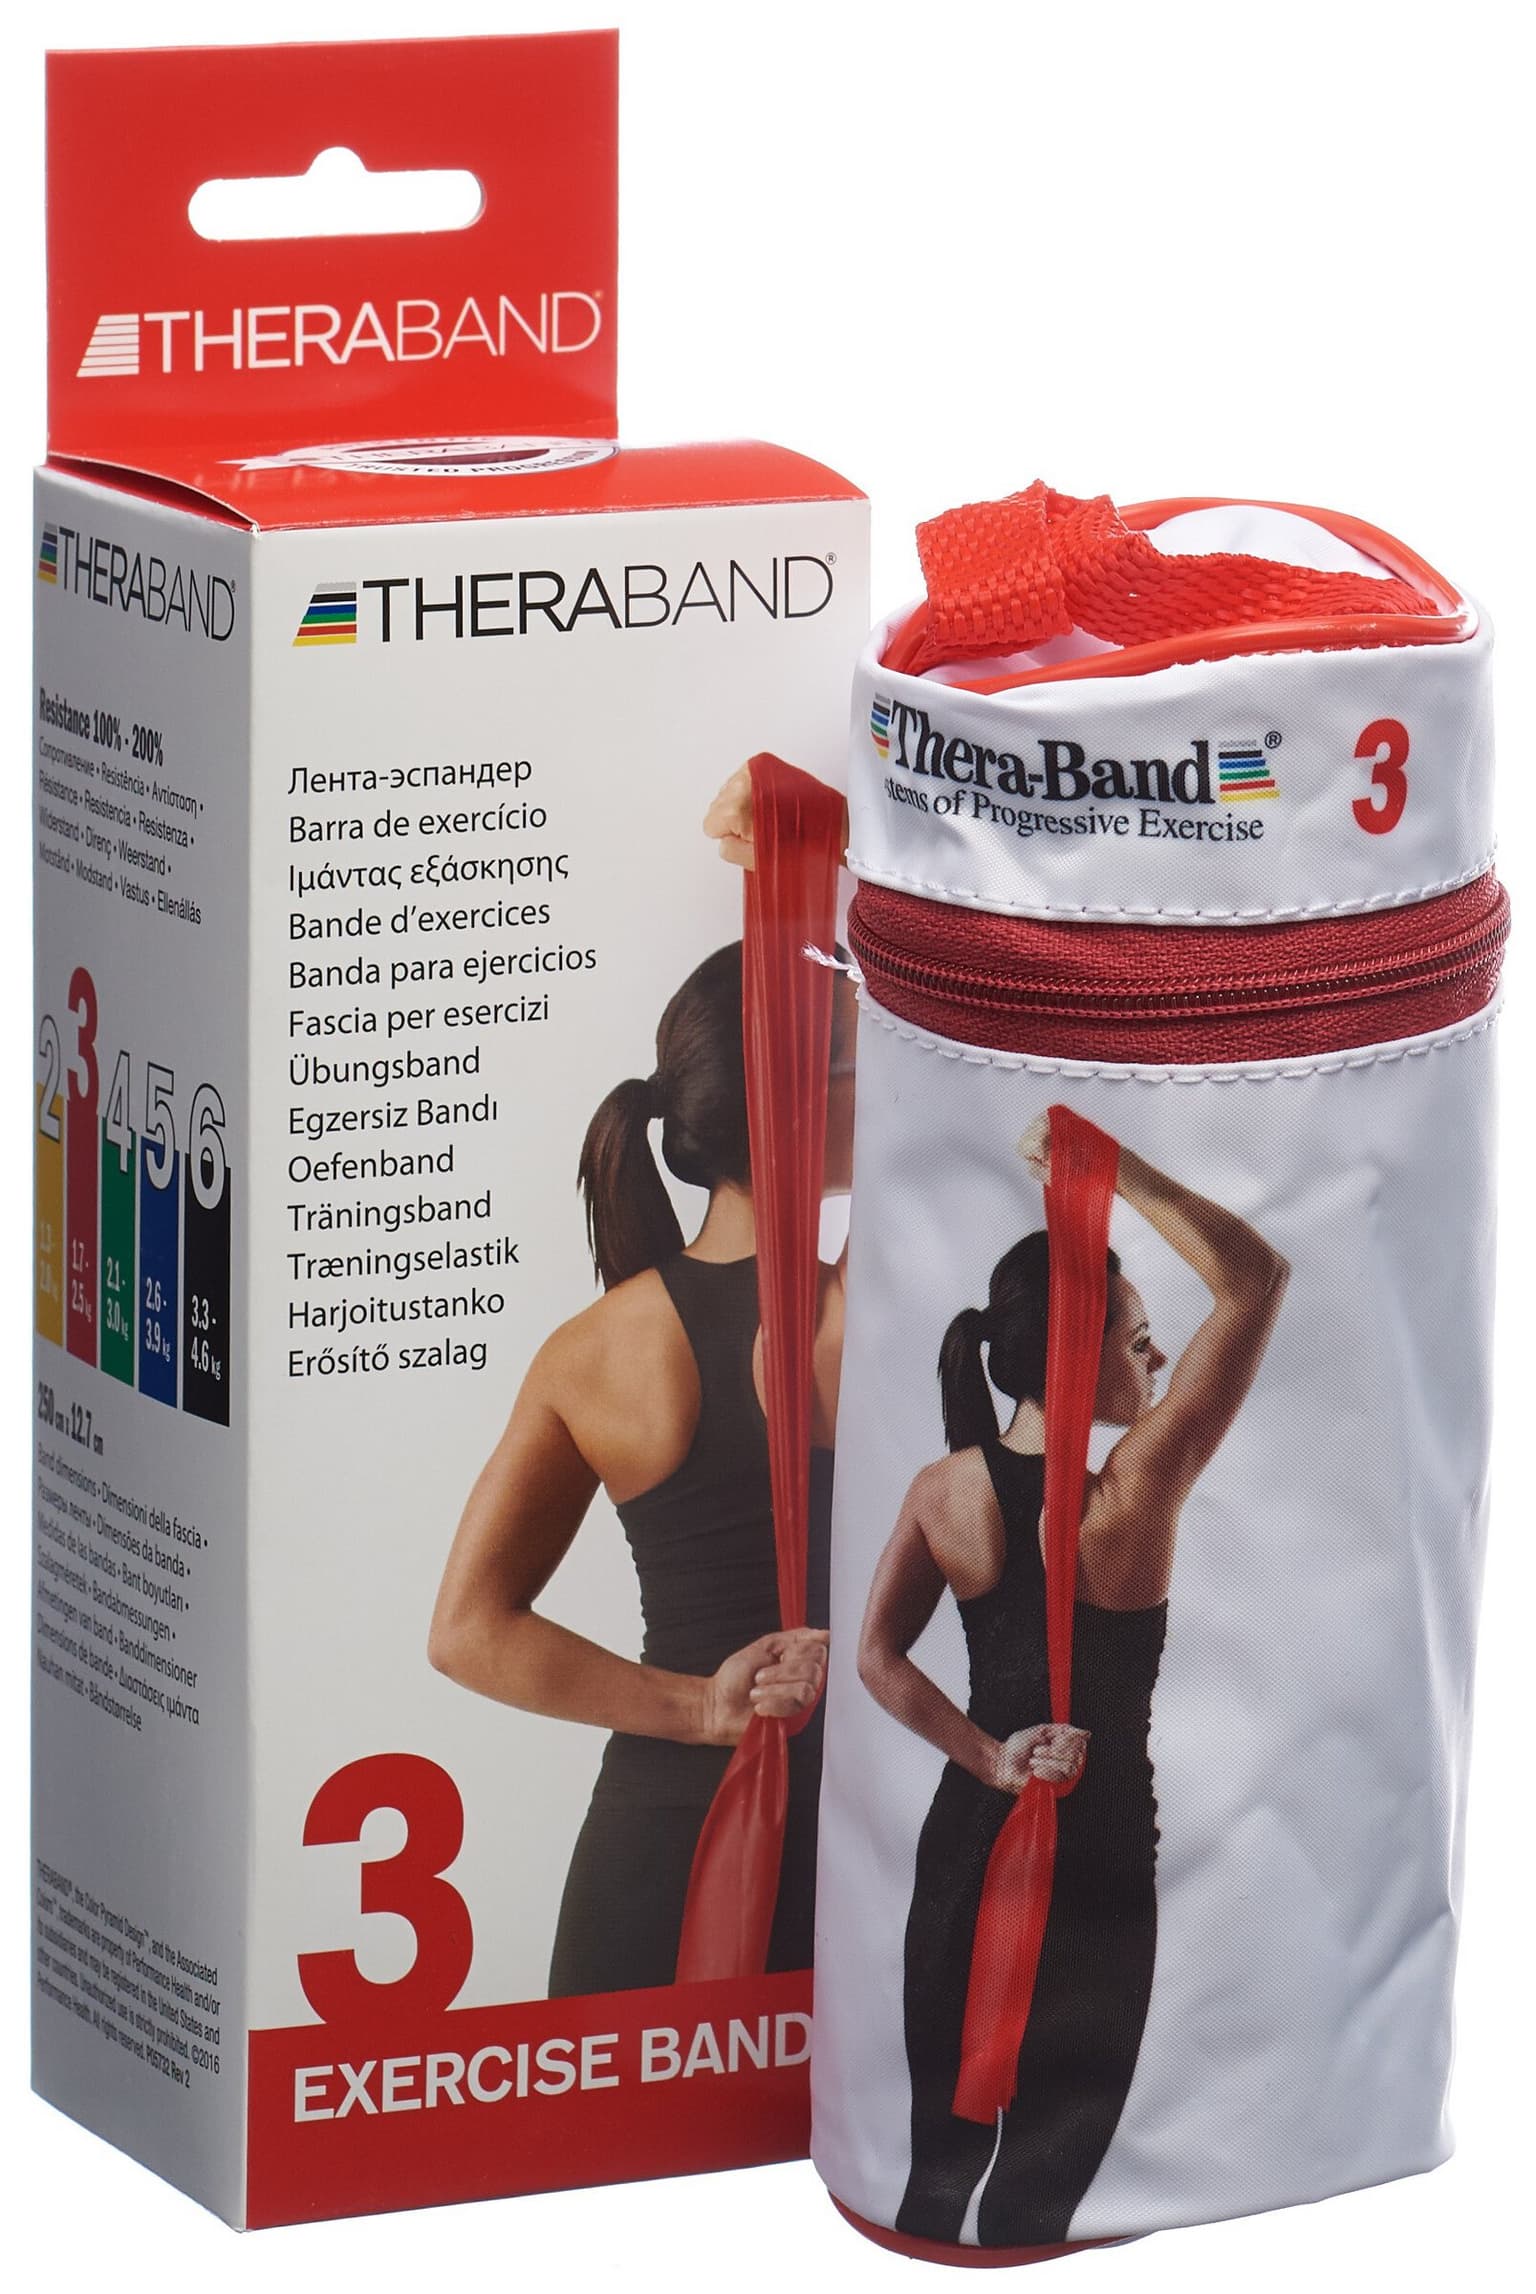 TheraBand TheraBand Fitnessband Fitnessband 3